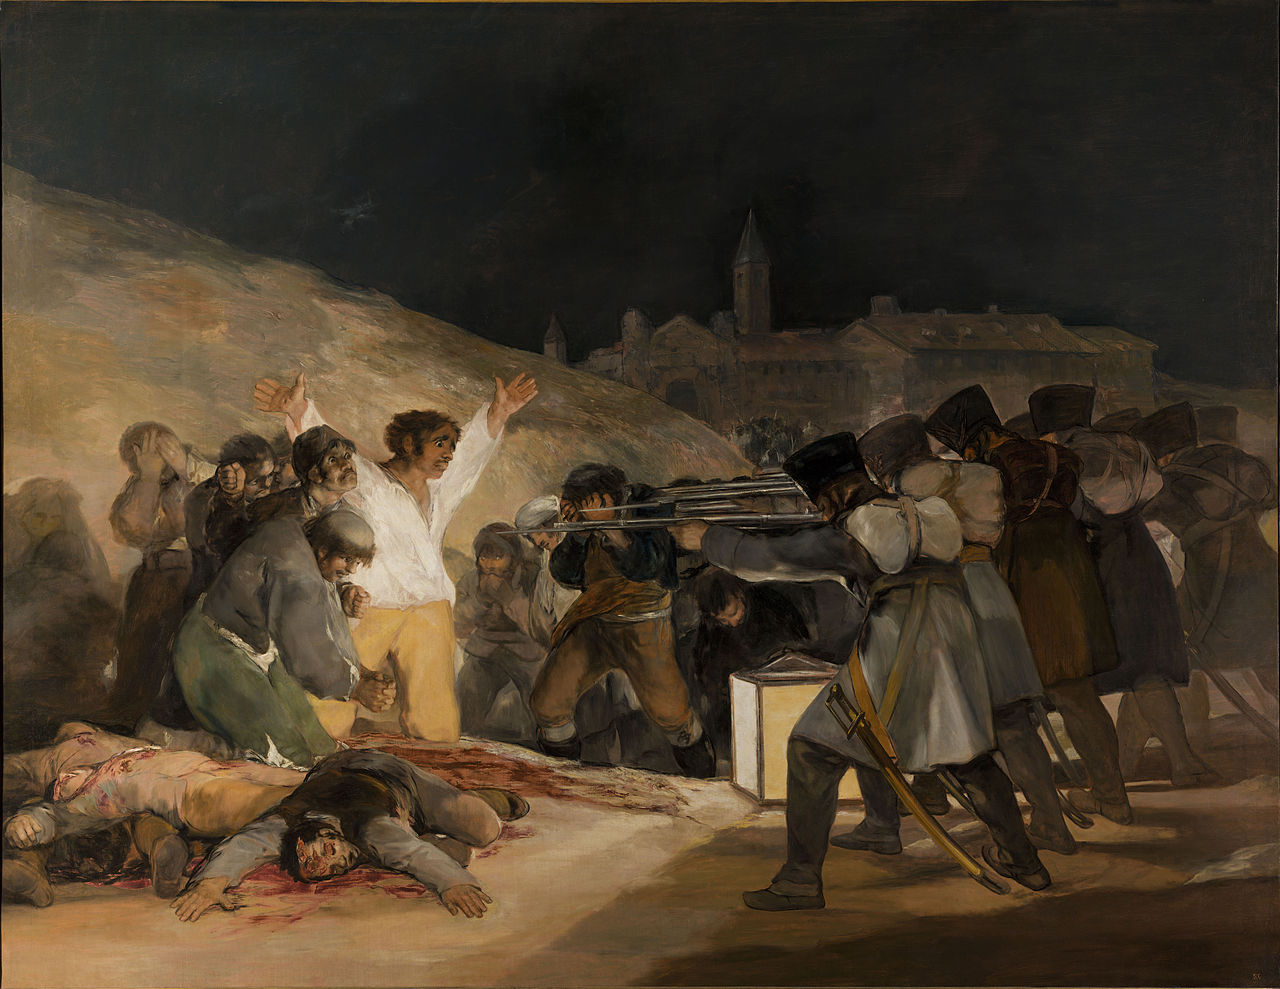 1808. május 3. by Francisco Goya - 1814 - 268 cm × 347 cm 